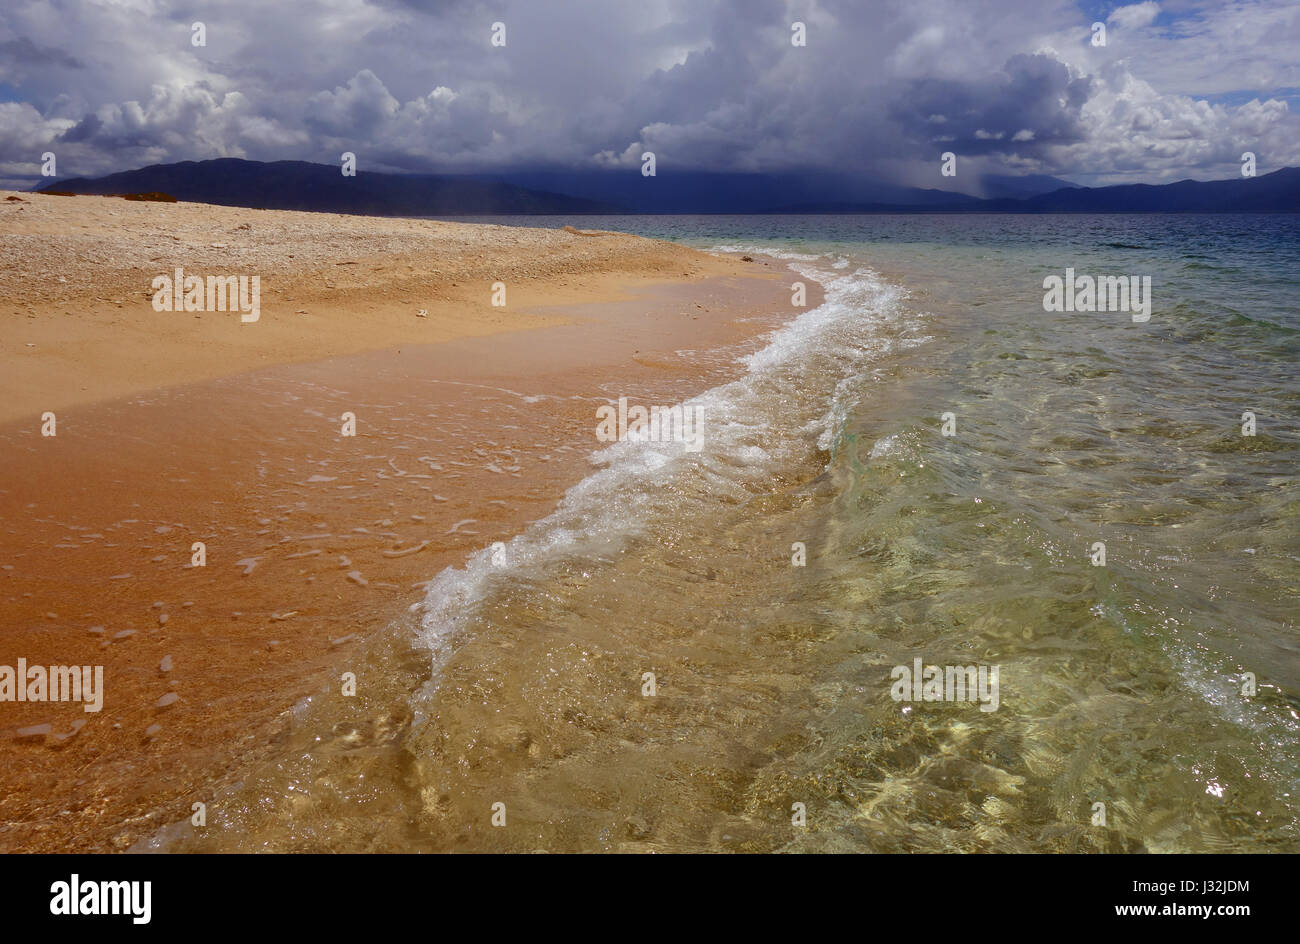 Tempête sur les montagnes tropicales humides vue de la plage sur l'île de Normanby, Frankland Islands, Grande Barrière de Corail, Queensland, Australie Banque D'Images